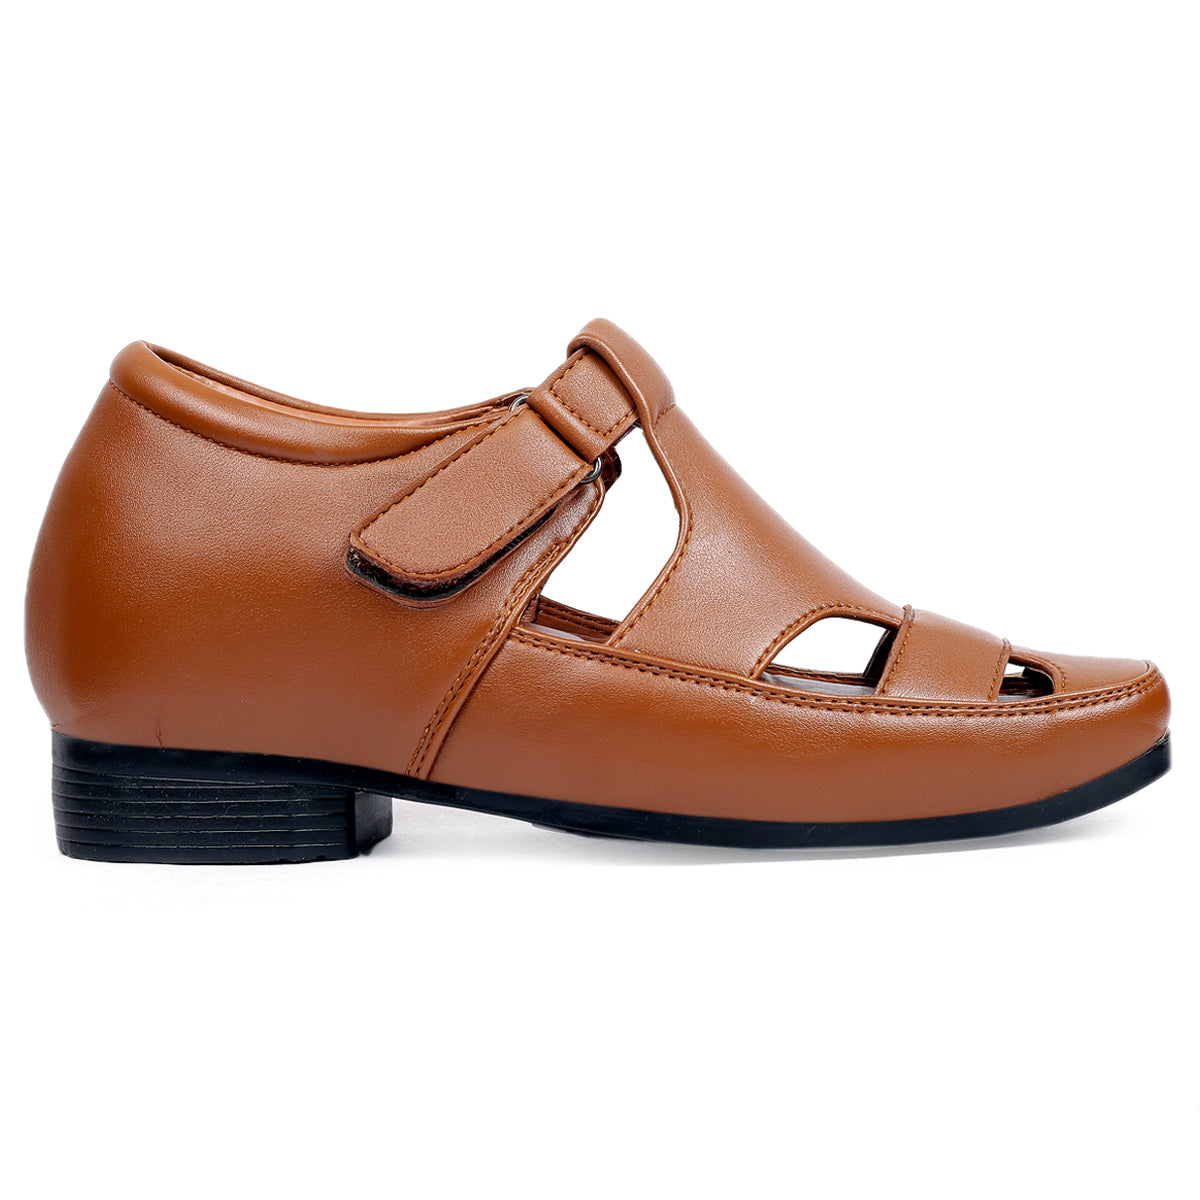 Bxxy's 3 Inch Hidden Height Increasing Elevator Roman Vegan Leather Sandals for Men